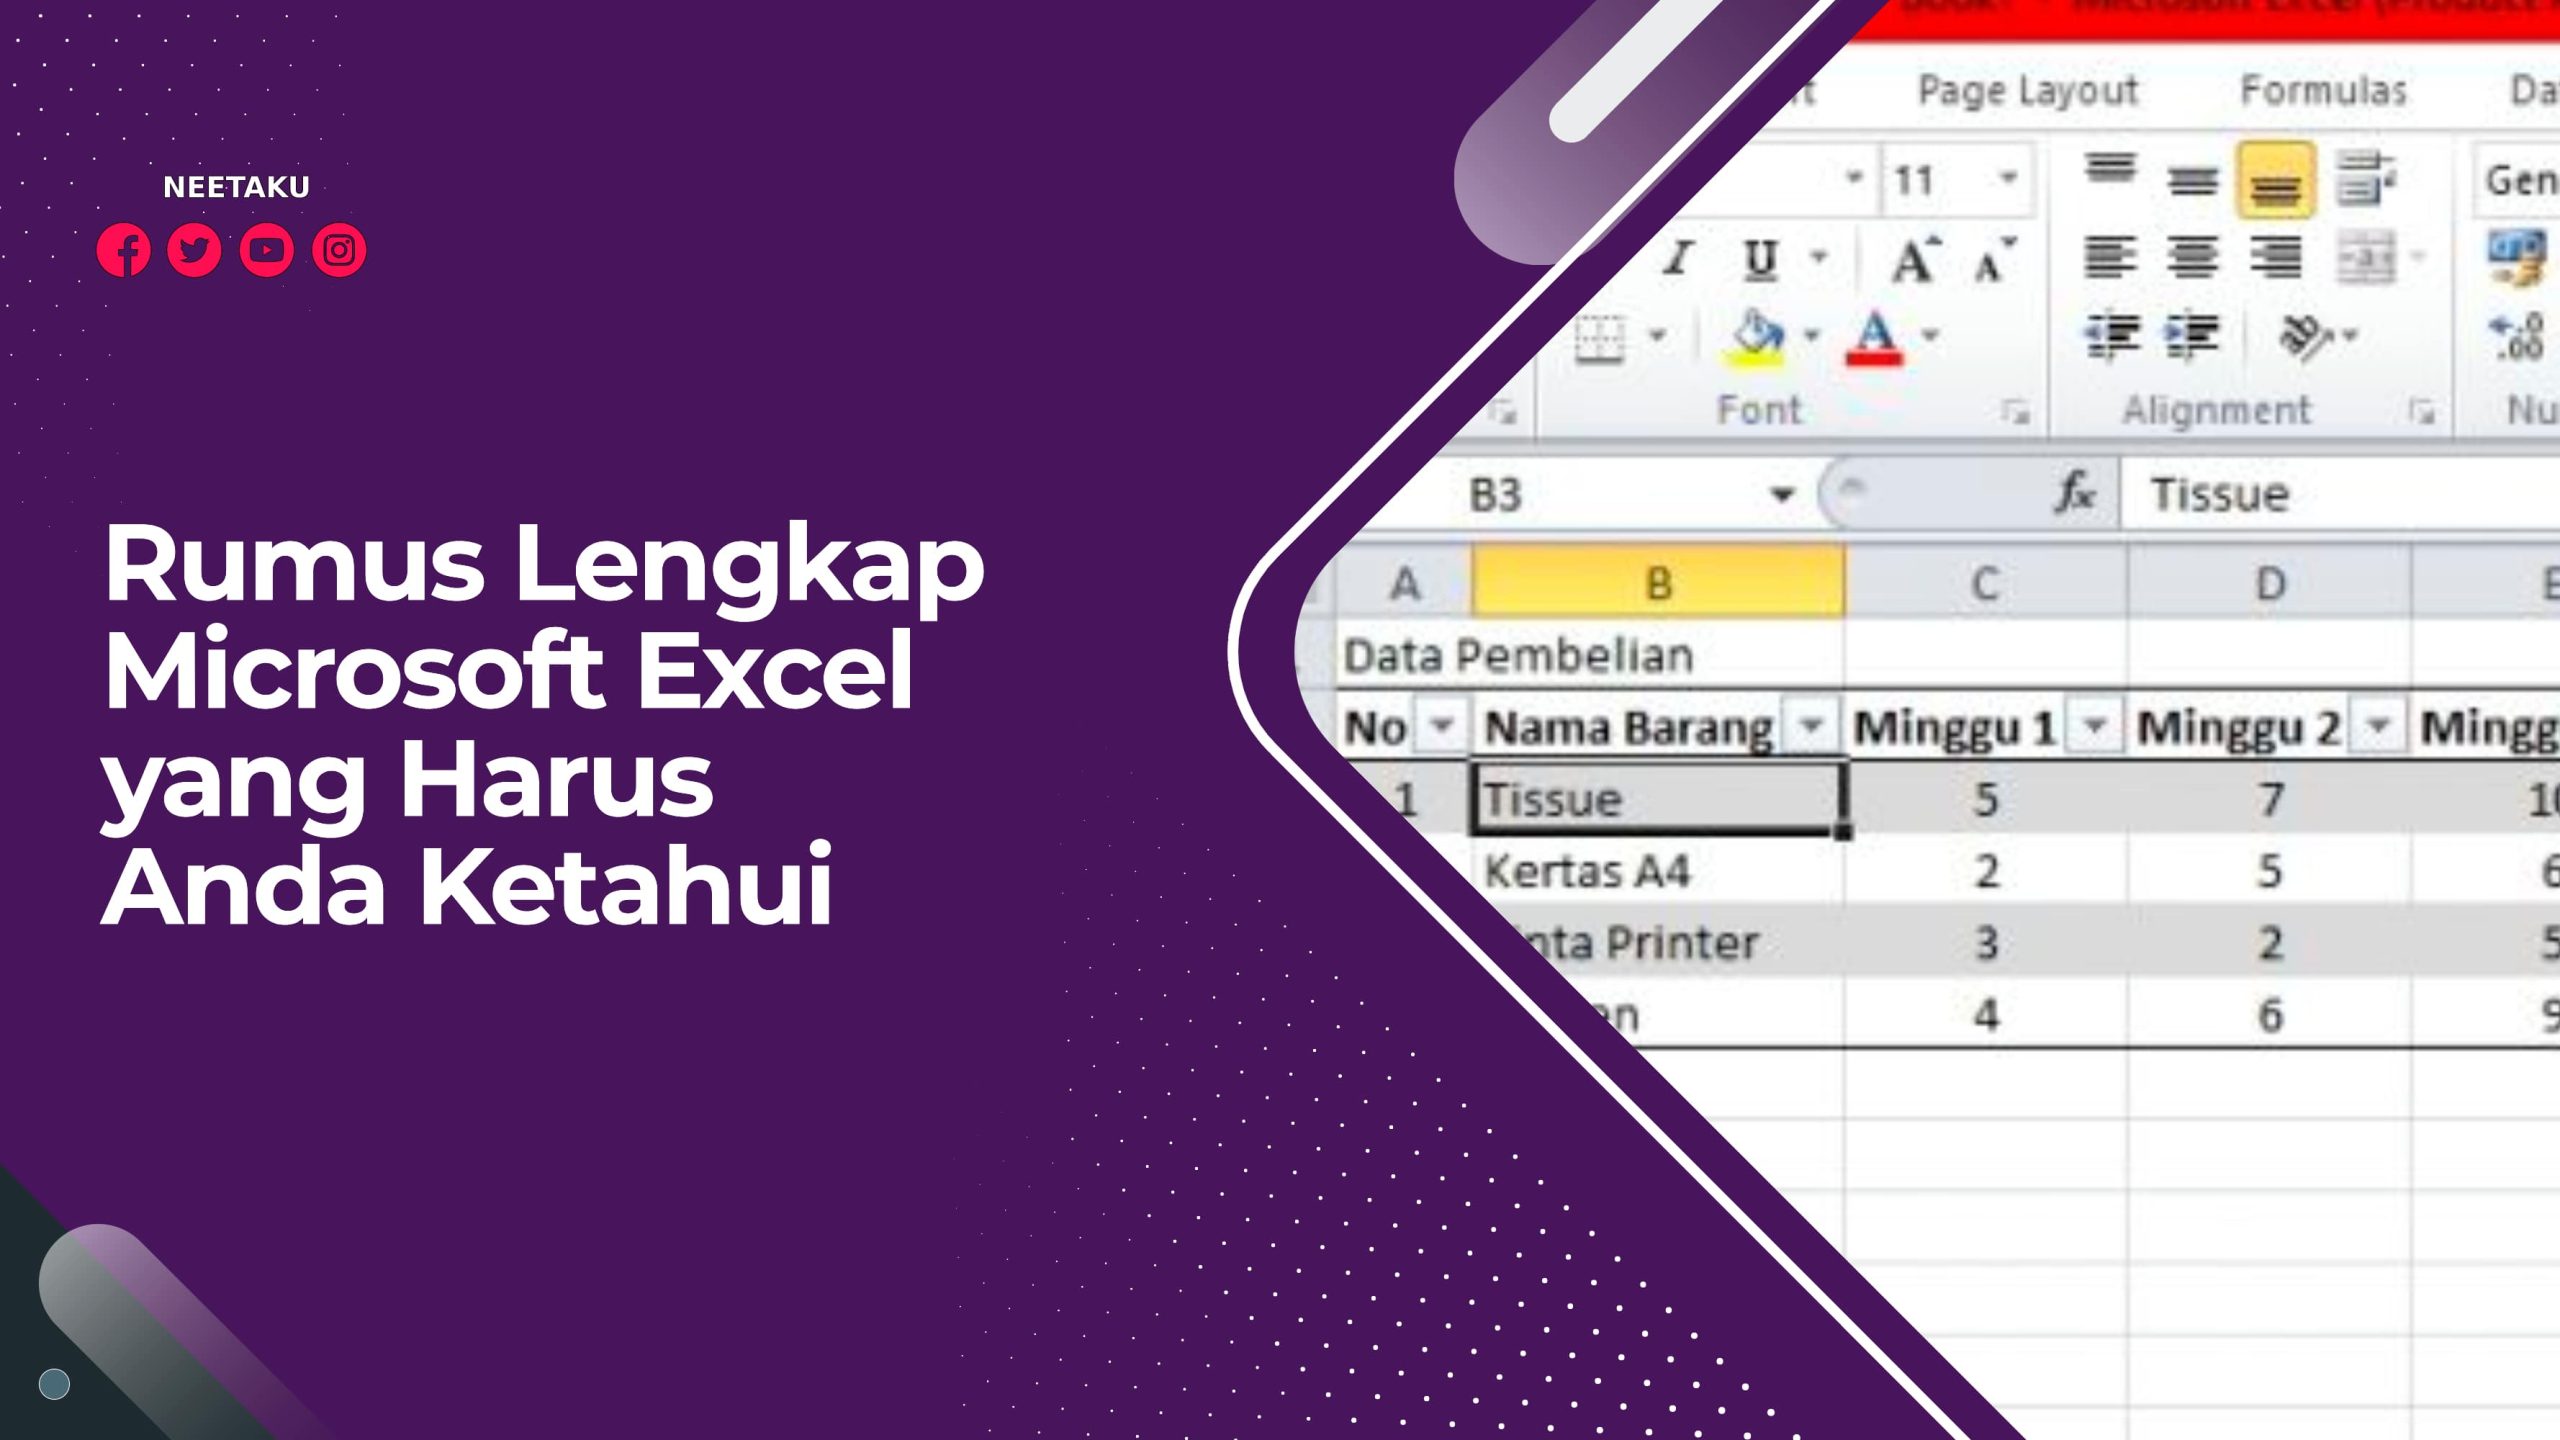 Rumus Lengkap Microsoft Excel